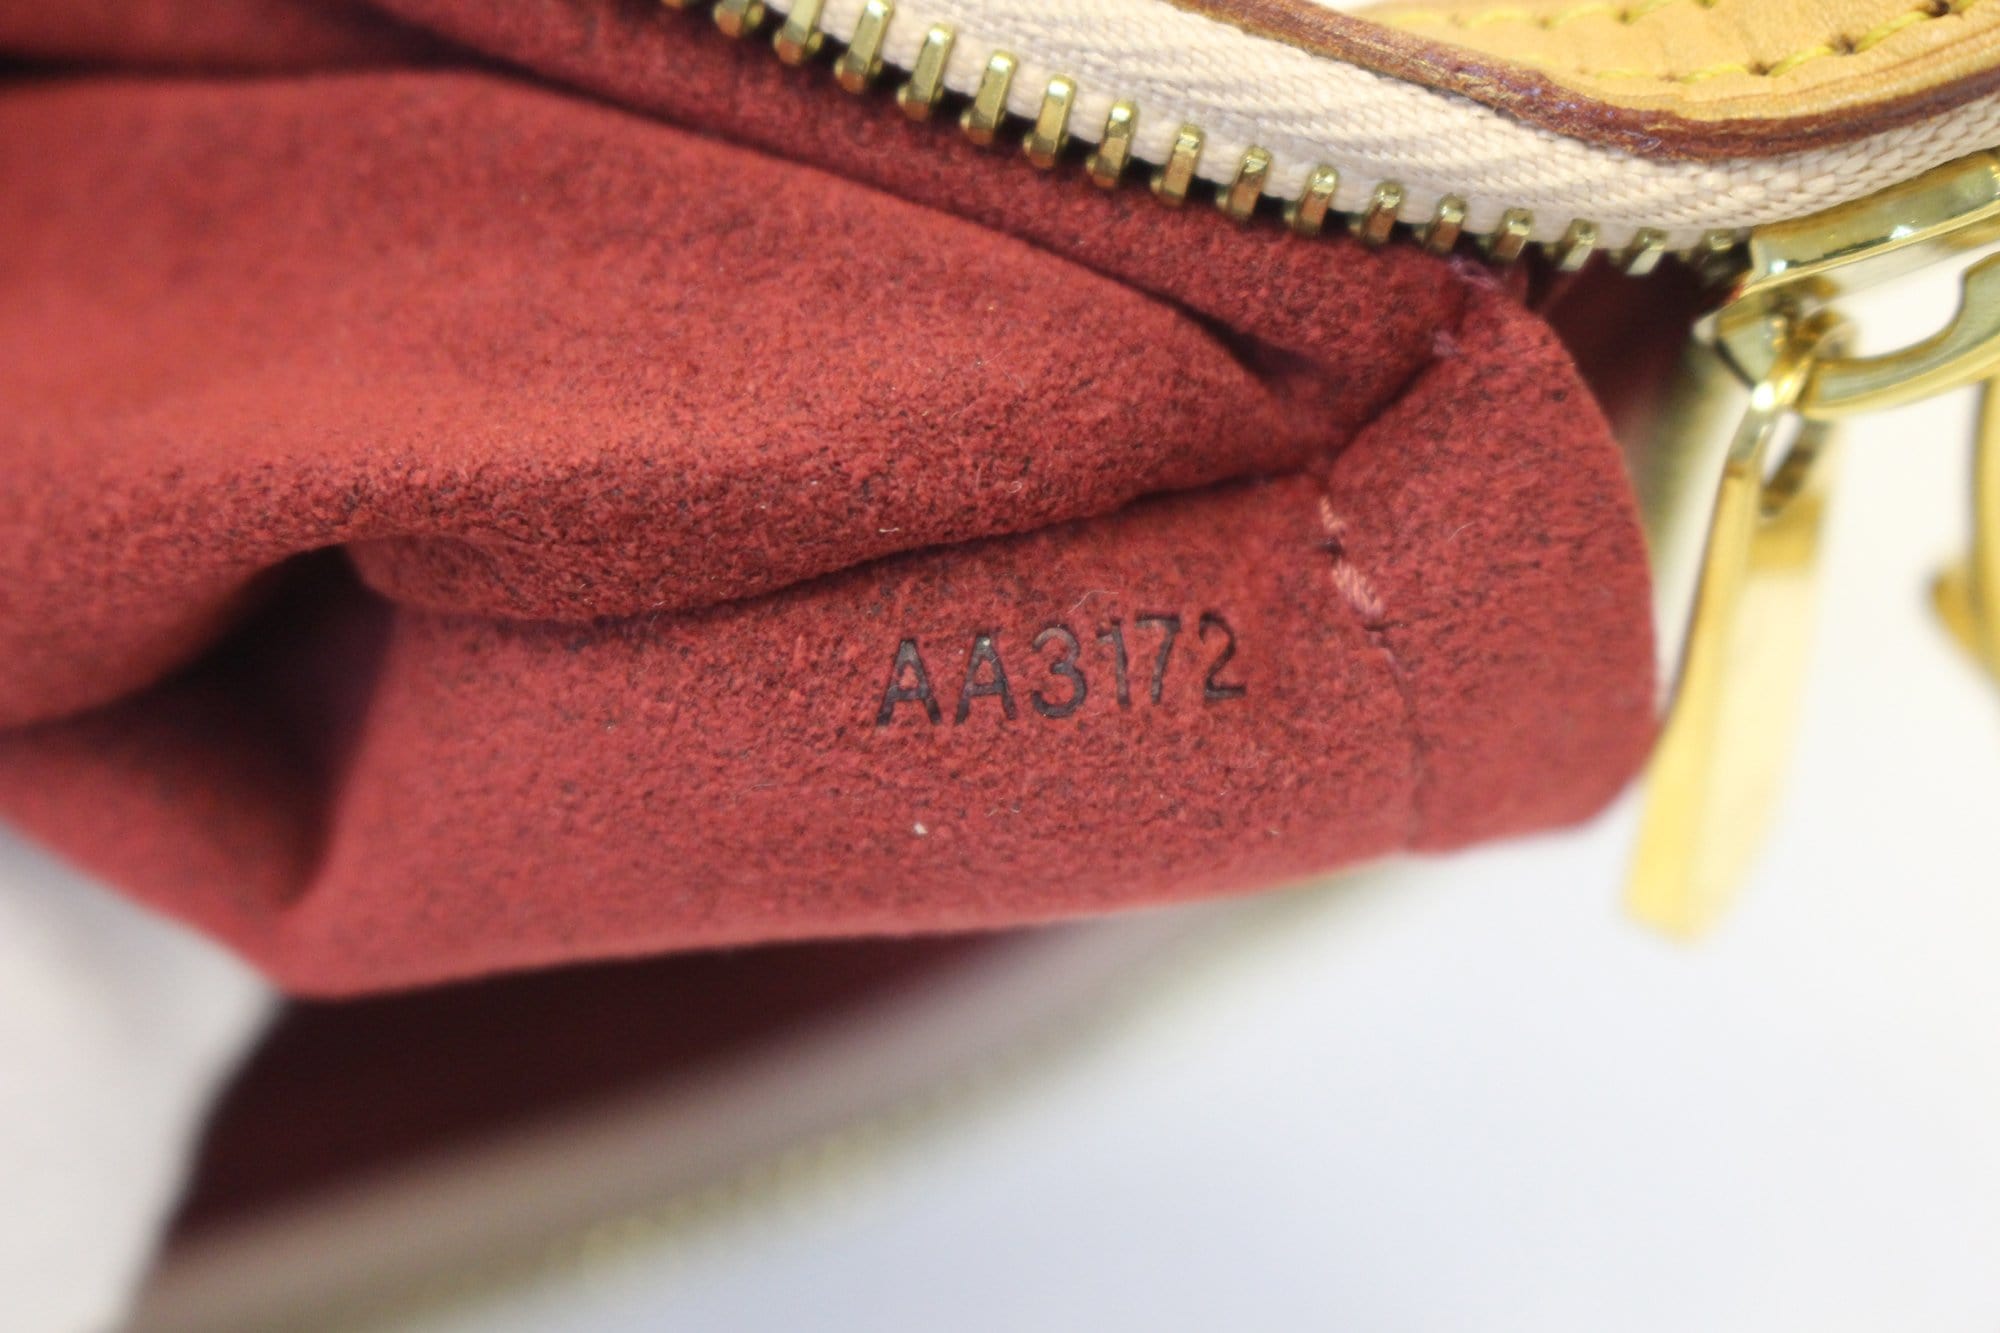 Louis Vuitton Milla Pochette Monogram Multicolor MM - ShopStyle Clutches